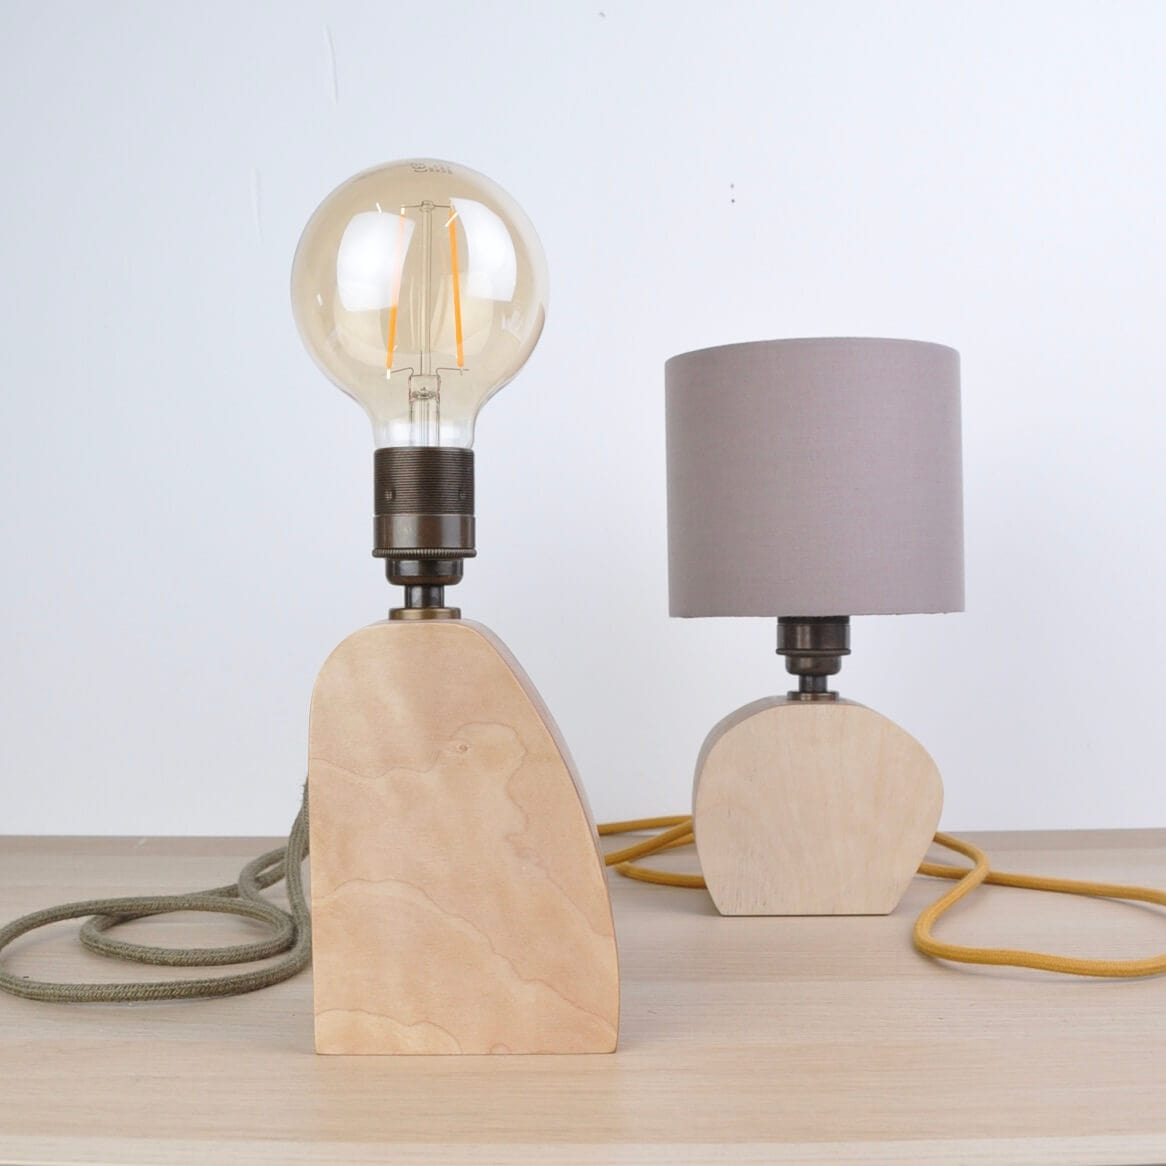 PRIORMADE Lamp Making Kit